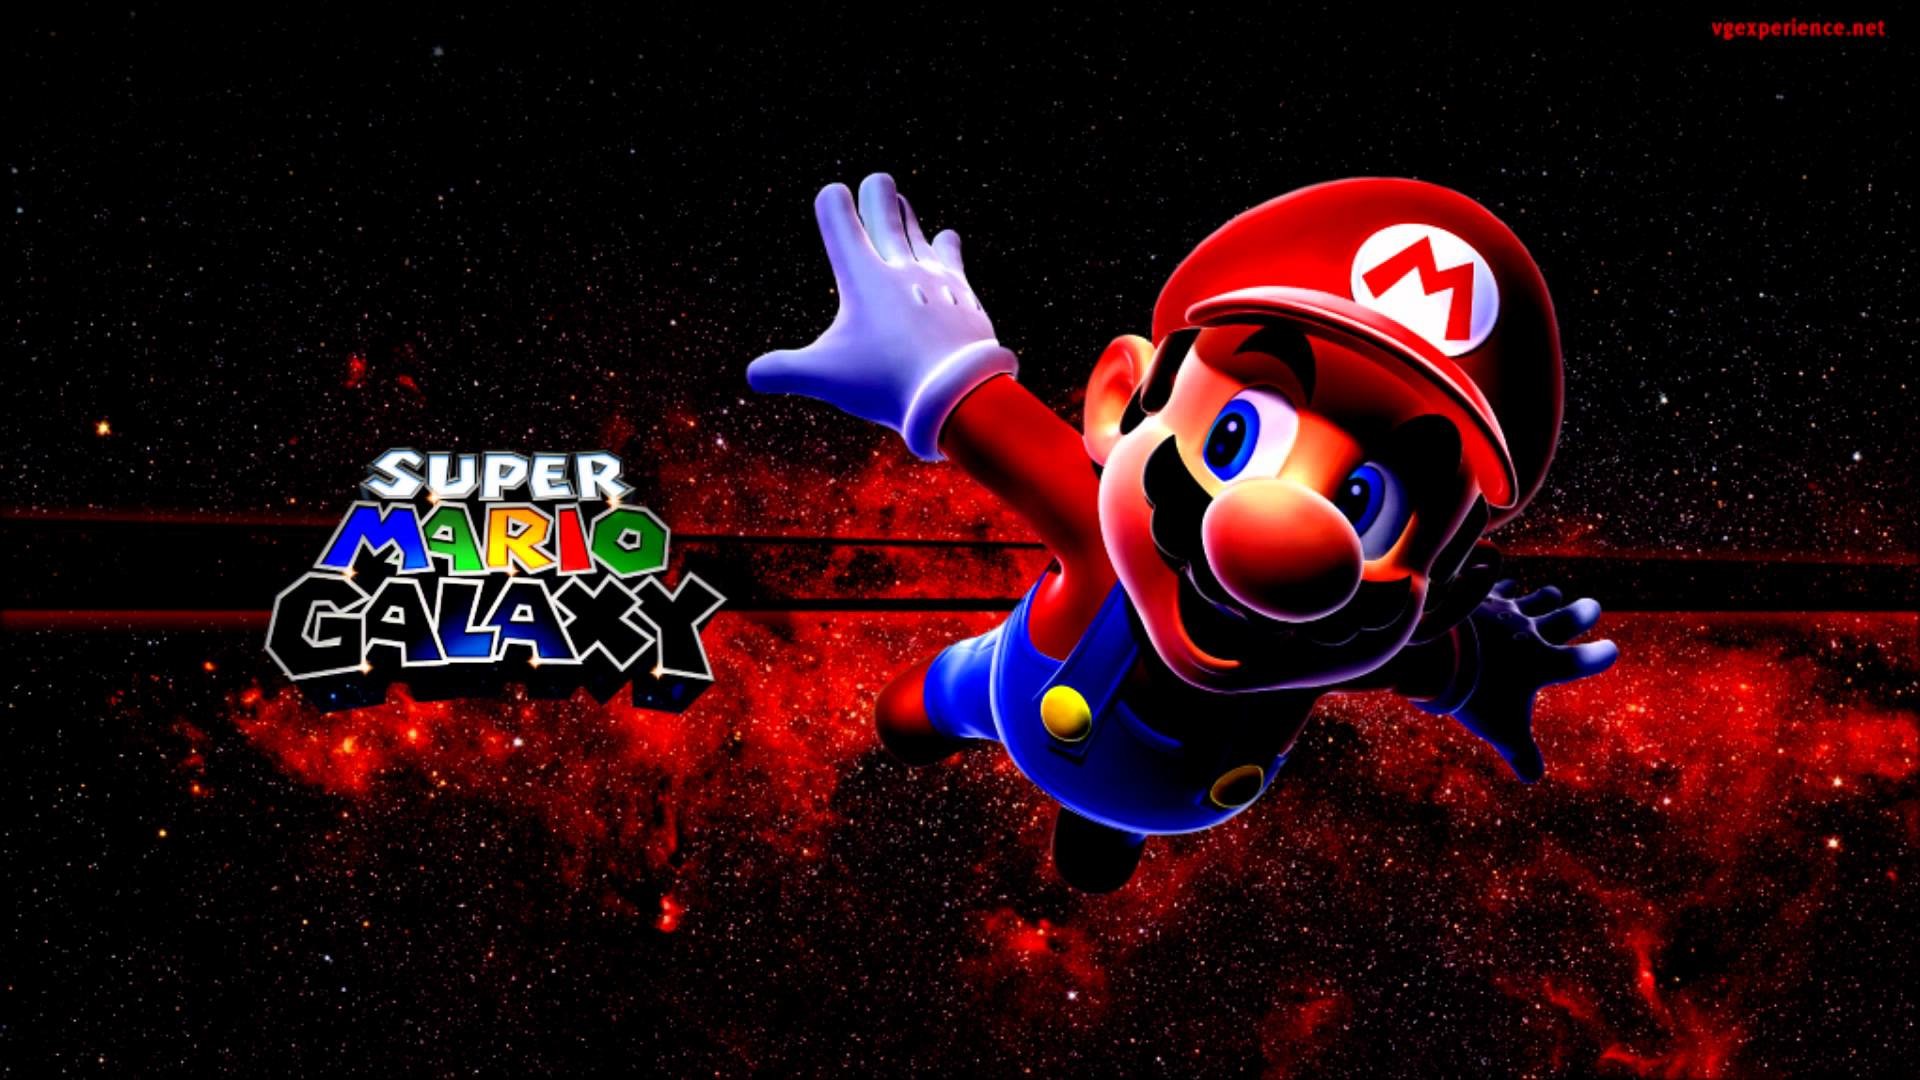 1920x1080 Super Mario Bros. Wii & Super Mario Galaxy 1, 2 Wallpapers -HD- - YouTube